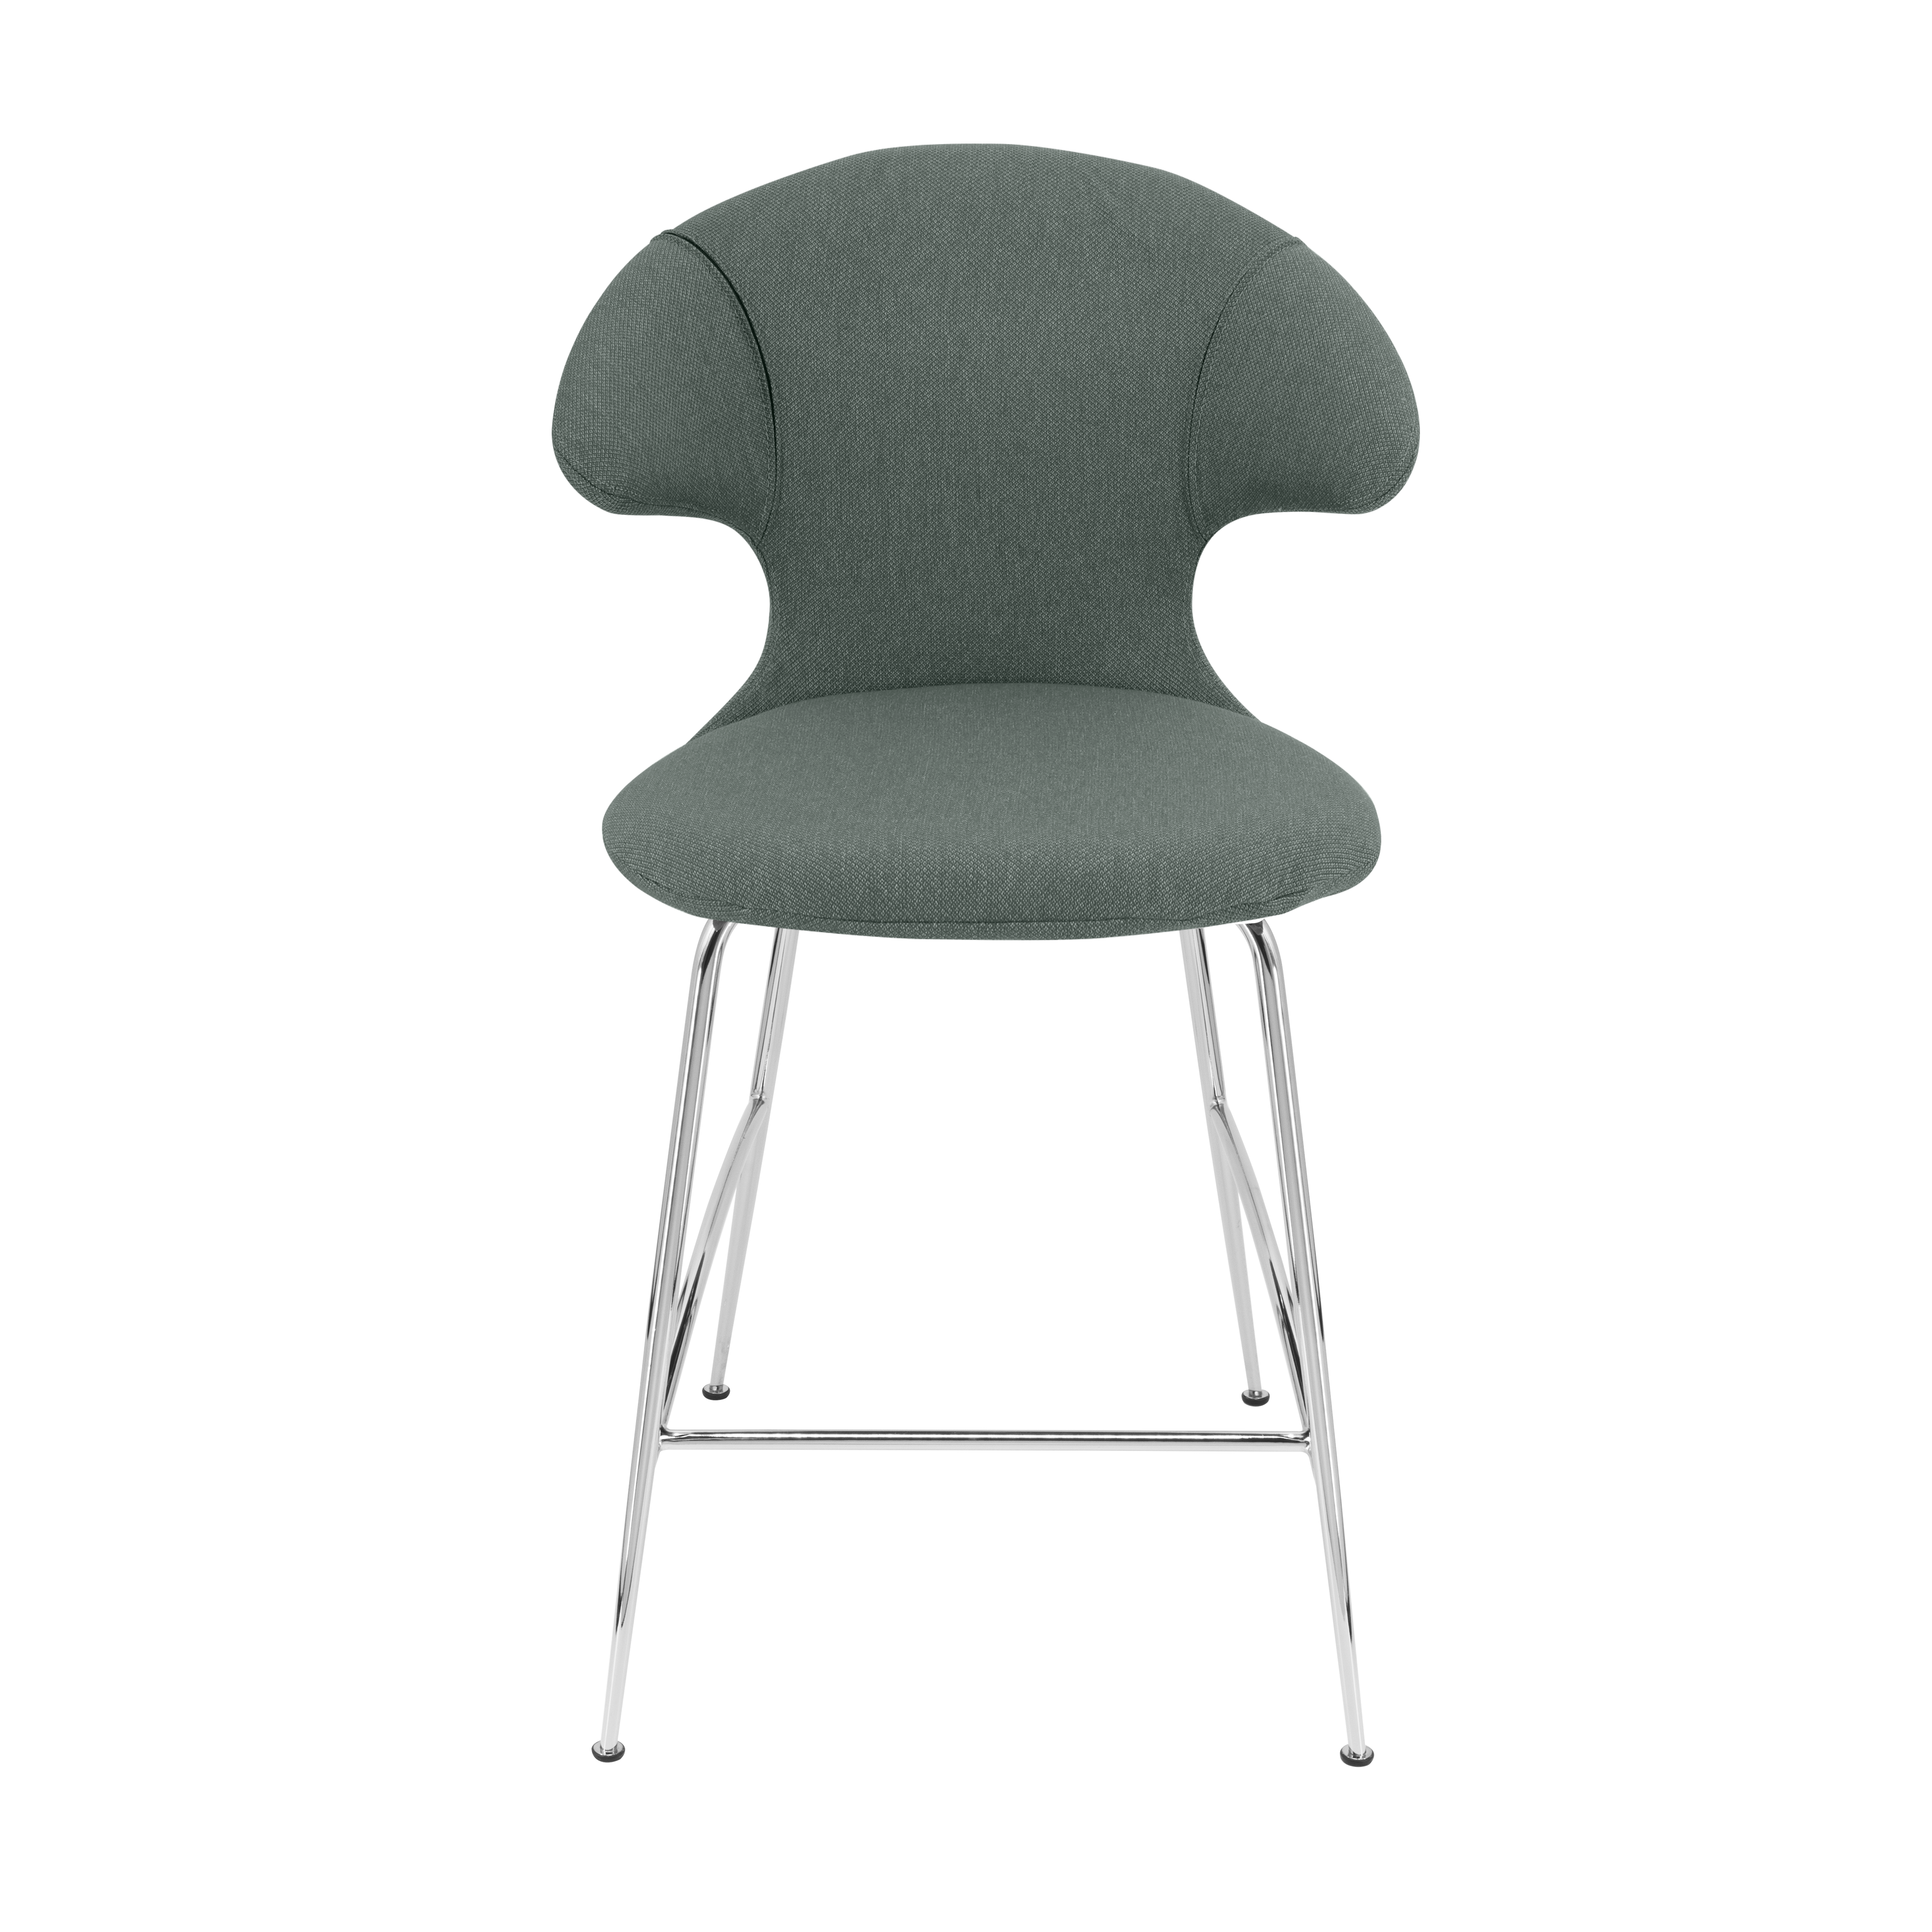 Time Flies Counter Stuhl in Morning Meadows präsentiert im Onlineshop von KAQTU Design AG. Barstuhl mit Armlehne ist von Umage